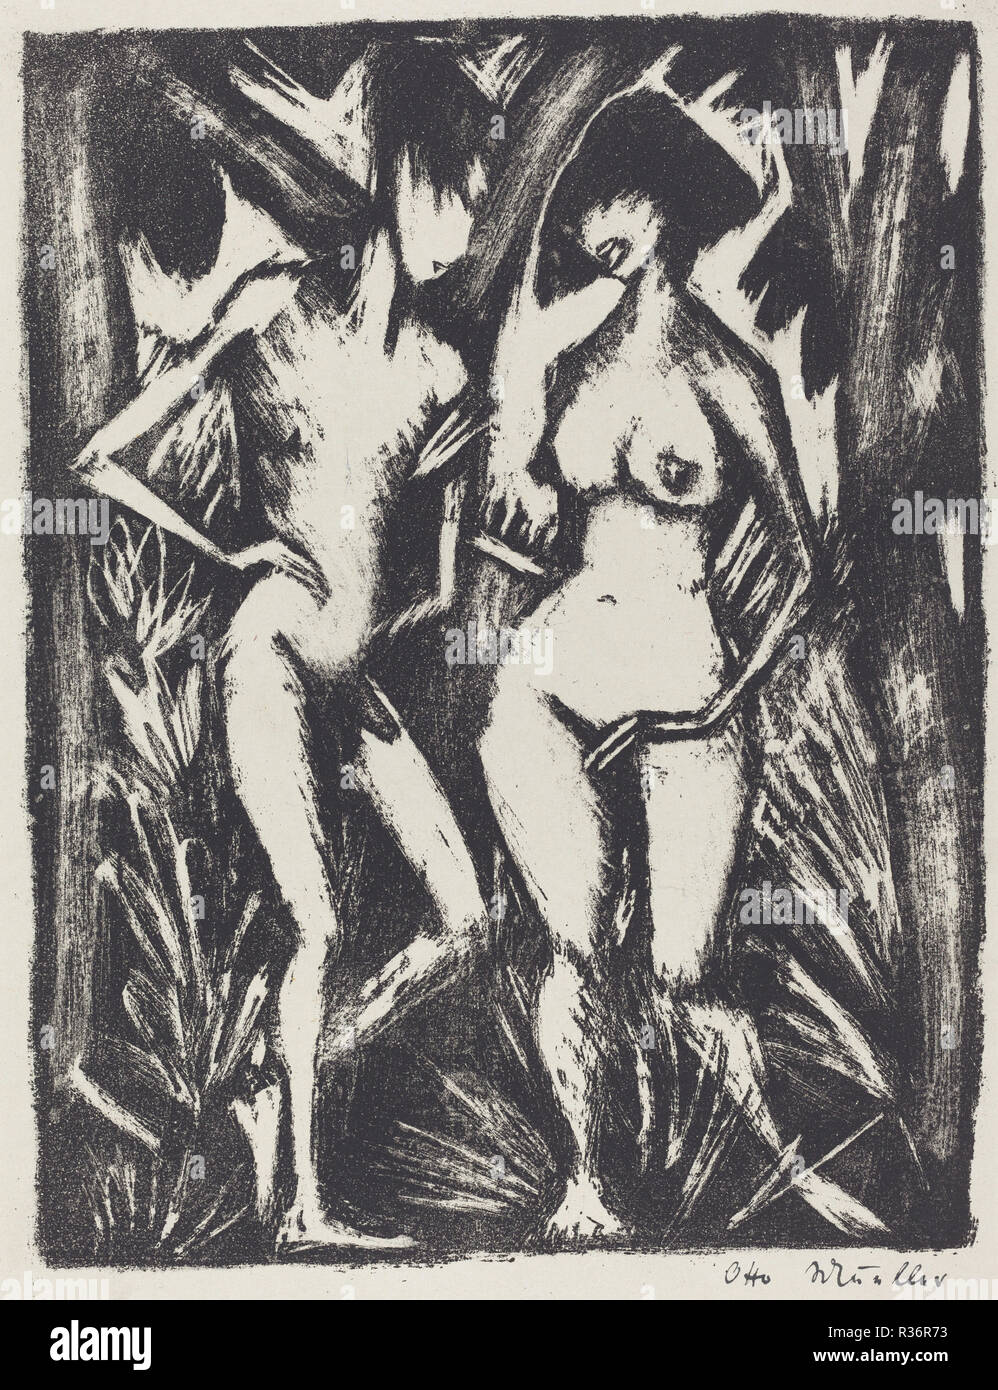 Adam et Eve (Adam und Eva). En date du : 1920/1923. Technique : lithographie. Musée : National Gallery of Art, Washington DC. Auteur : Otto Müller. Banque D'Images